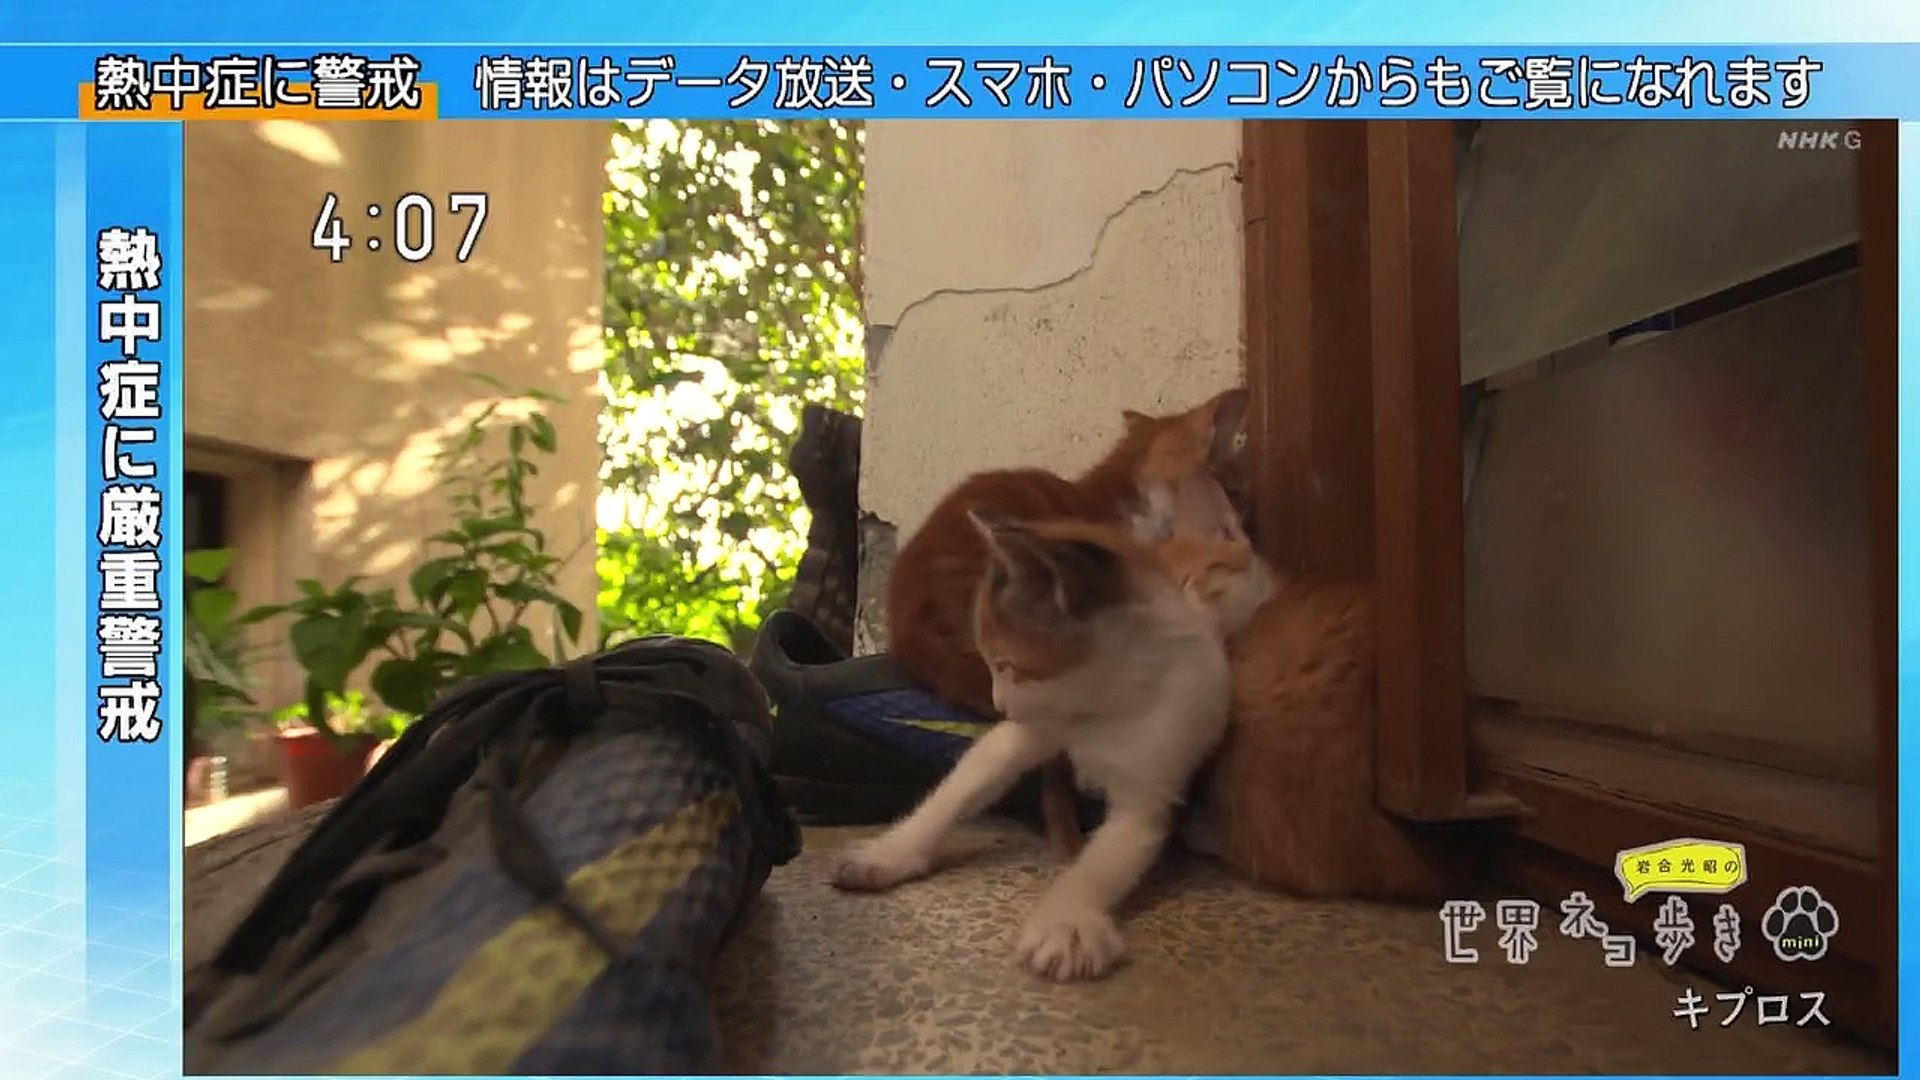 岩合光昭の世界ネコ歩きｍｉｎｉ ネコだんご お年寄りネコ 動画 Dailymotion